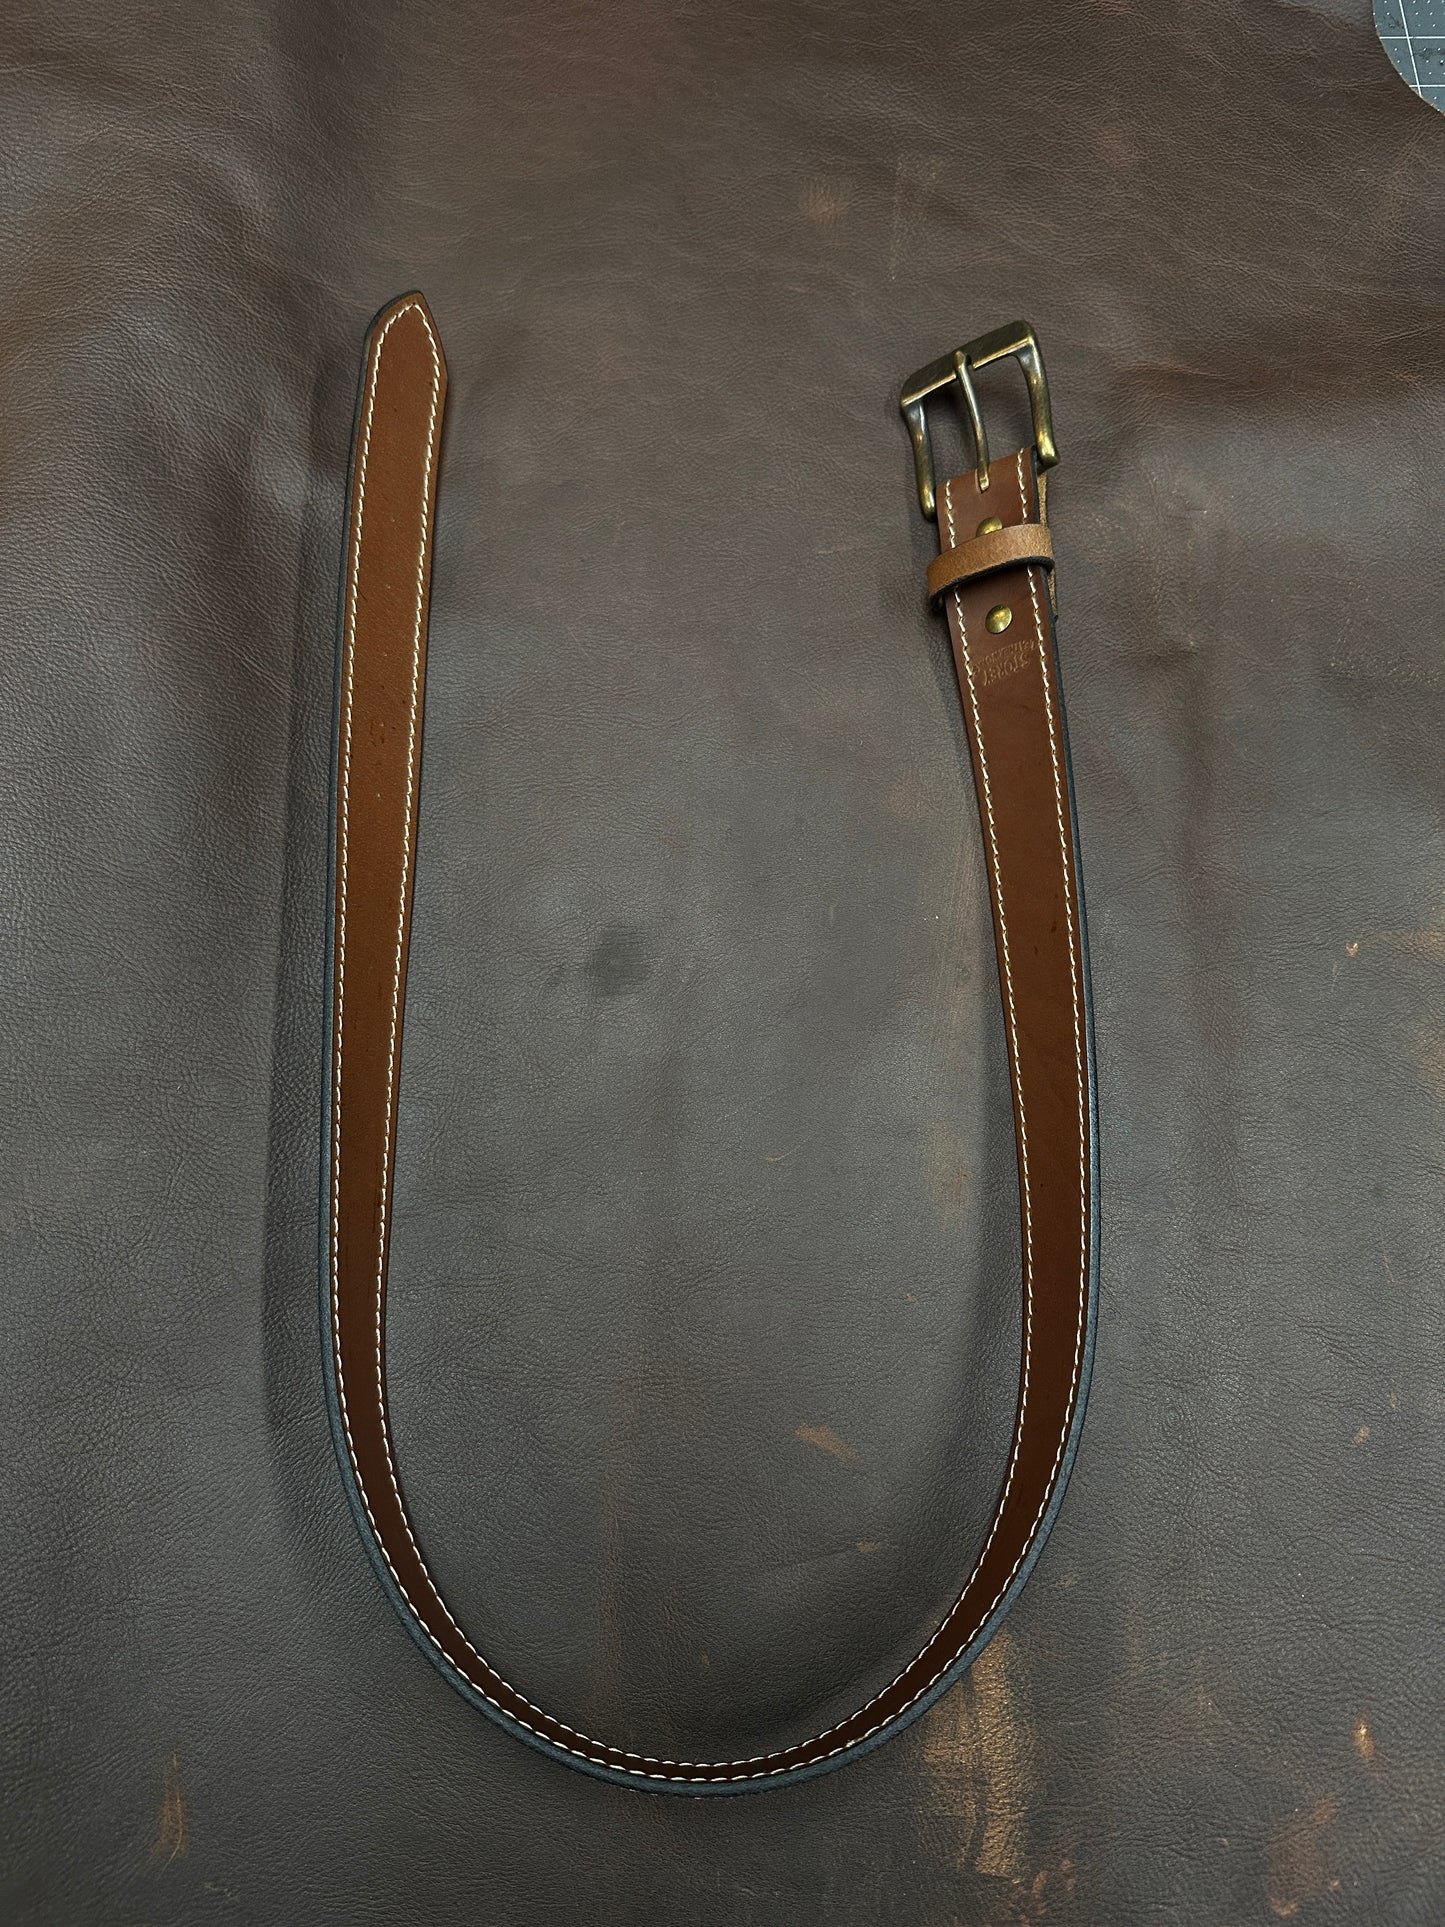 Custom Full-Grain Leather Belts